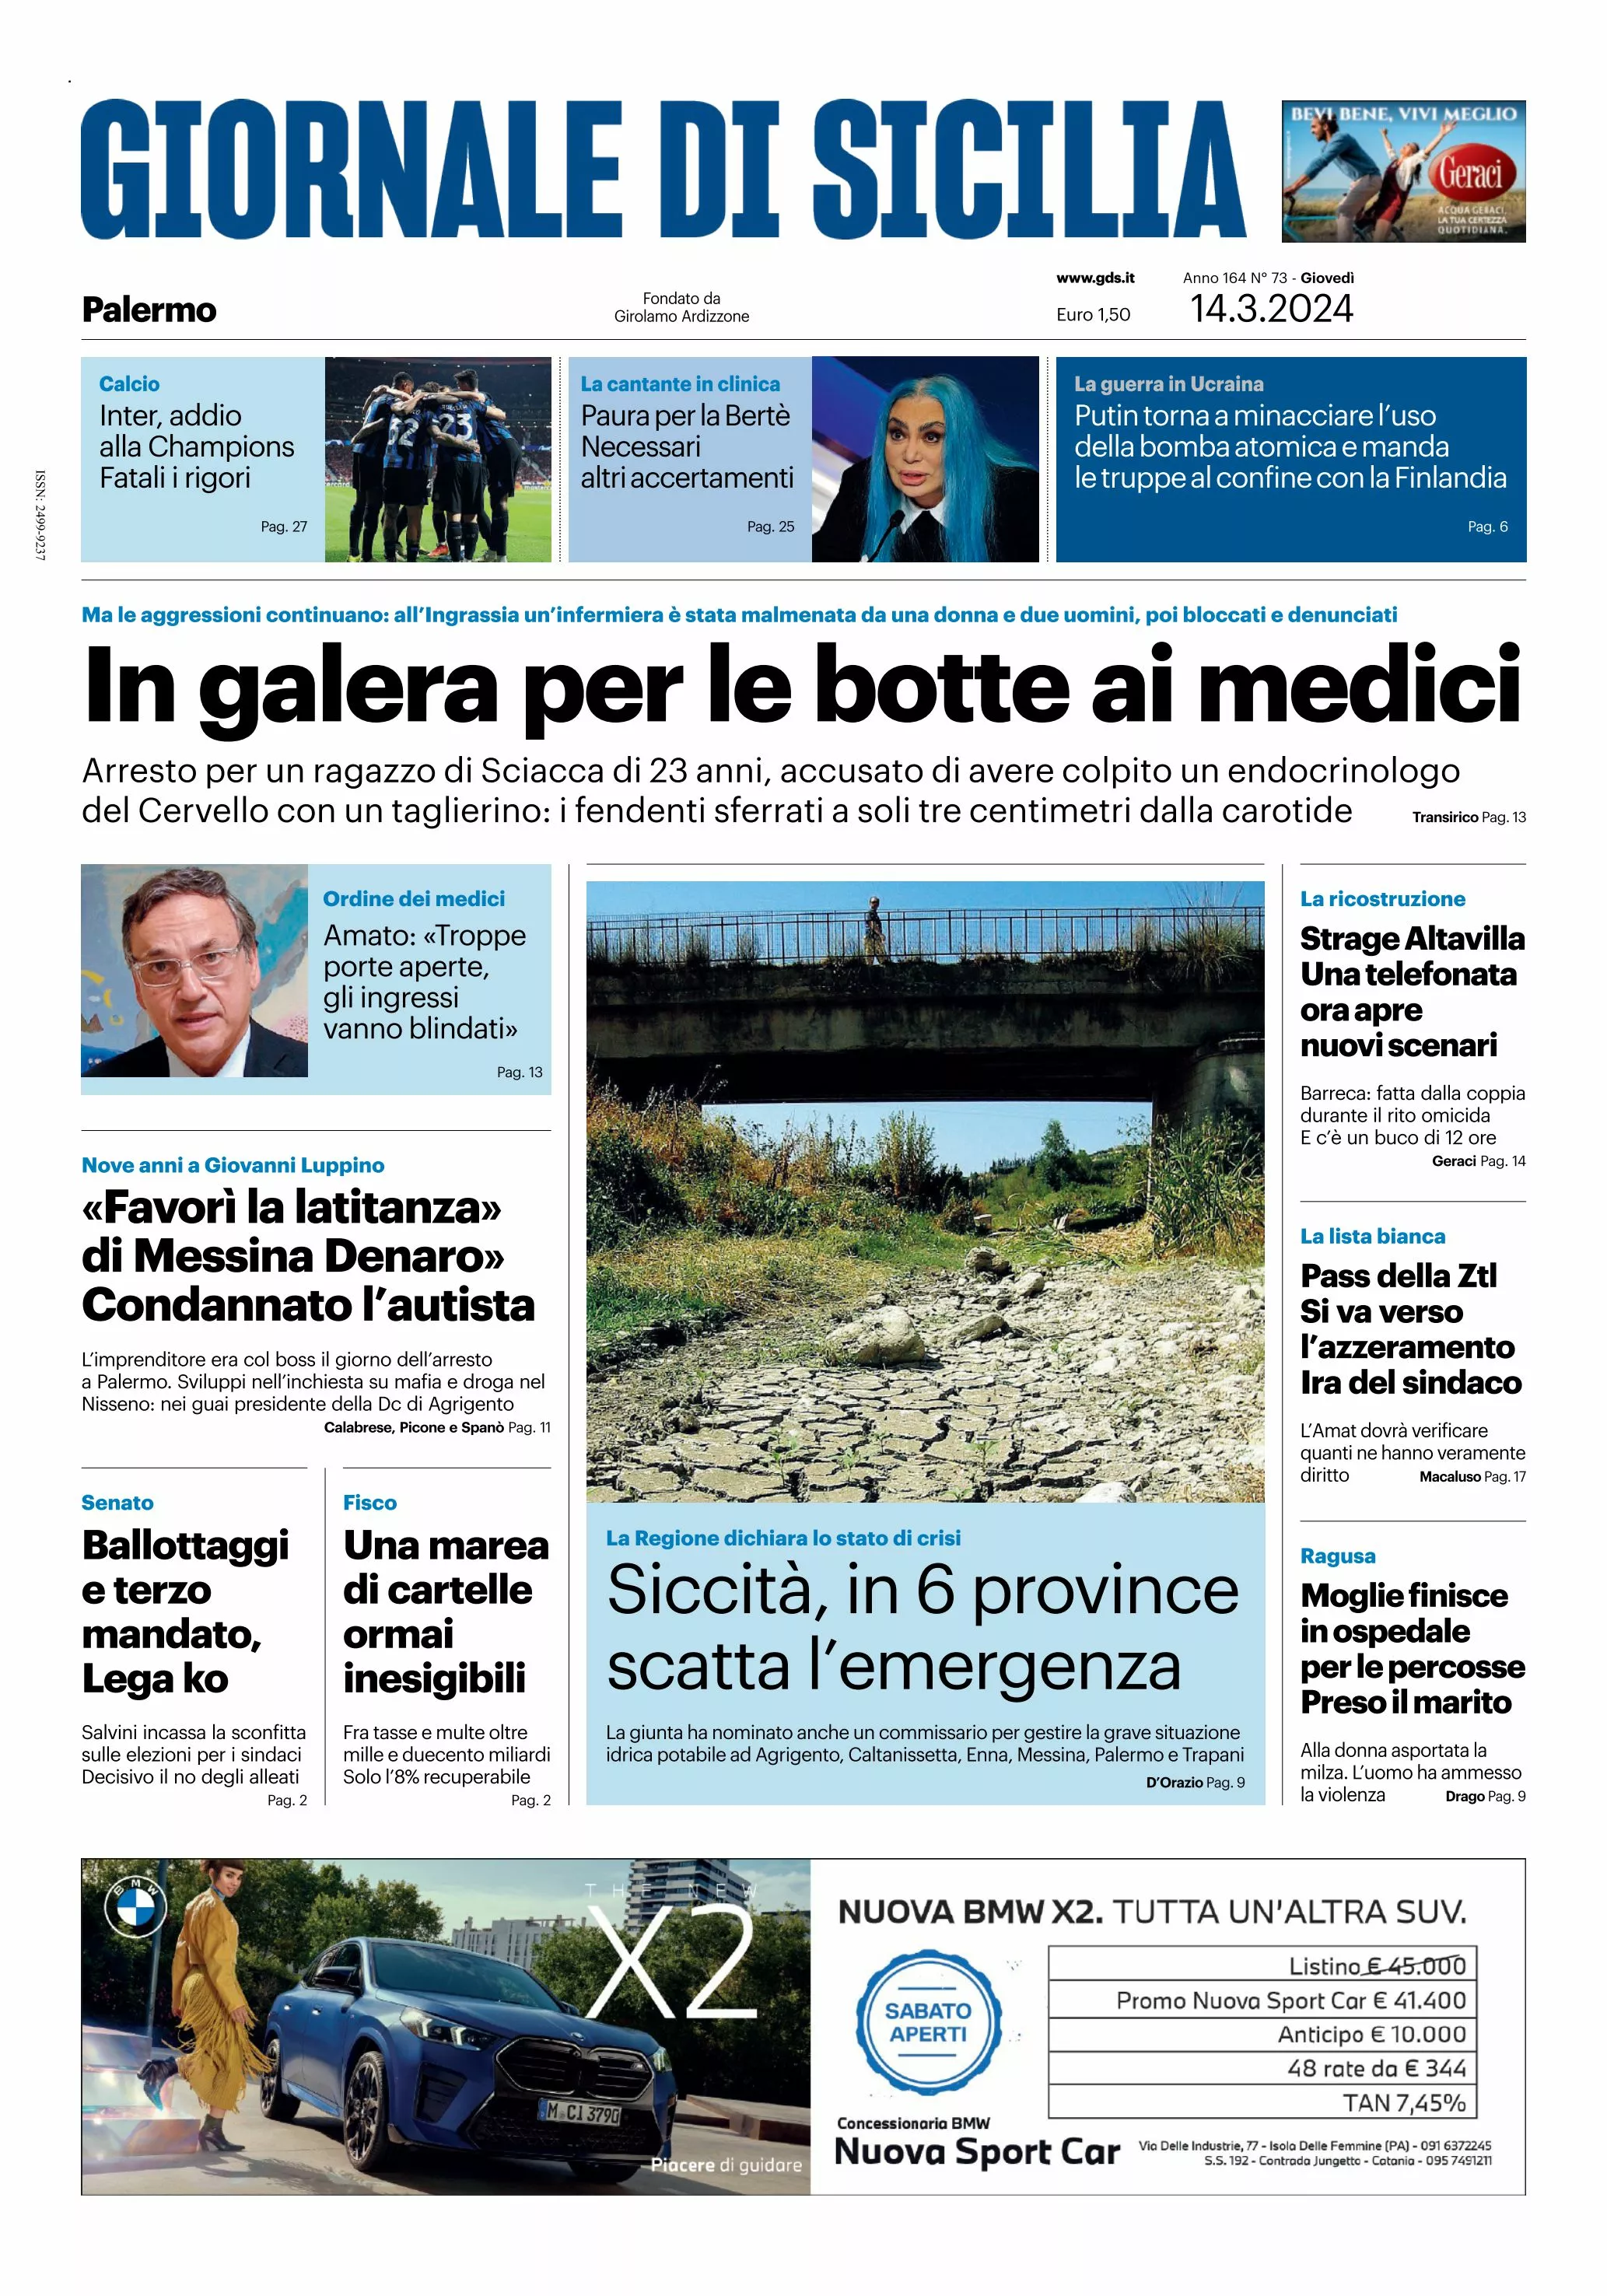 Prima-pagina-giornale-di-sicilia-edizione-palermo-di-oggi-14-03-24